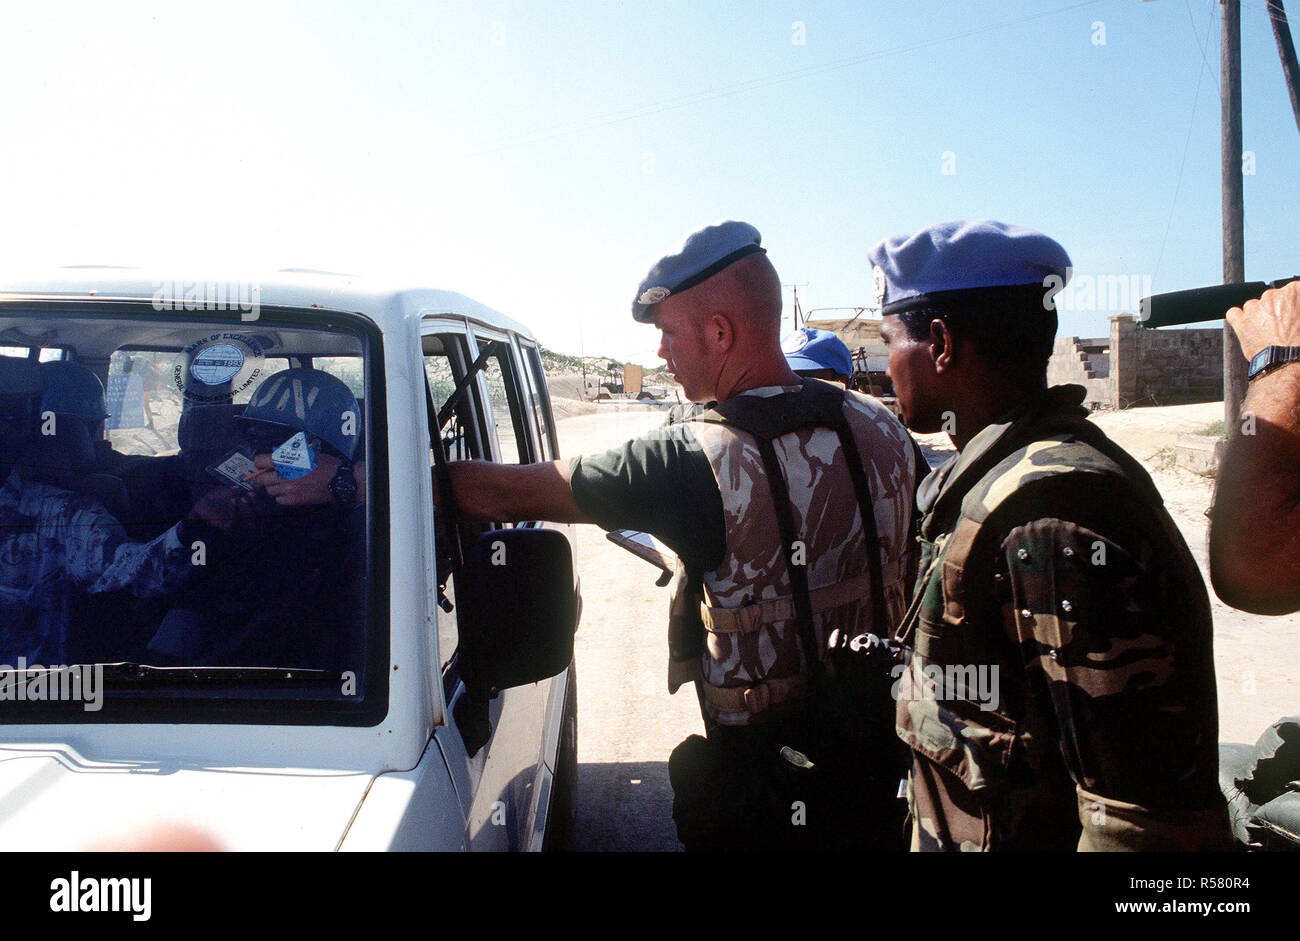 Un soldado belga realiza una comprobación de seguridad en un vehículo tratando de entrar en el recinto en Kismayo. El contingente belga es parte de las fuerzas de las Naciones Unidas en Somalia en apoyo de la operación continúan la esperanza. Foto de stock